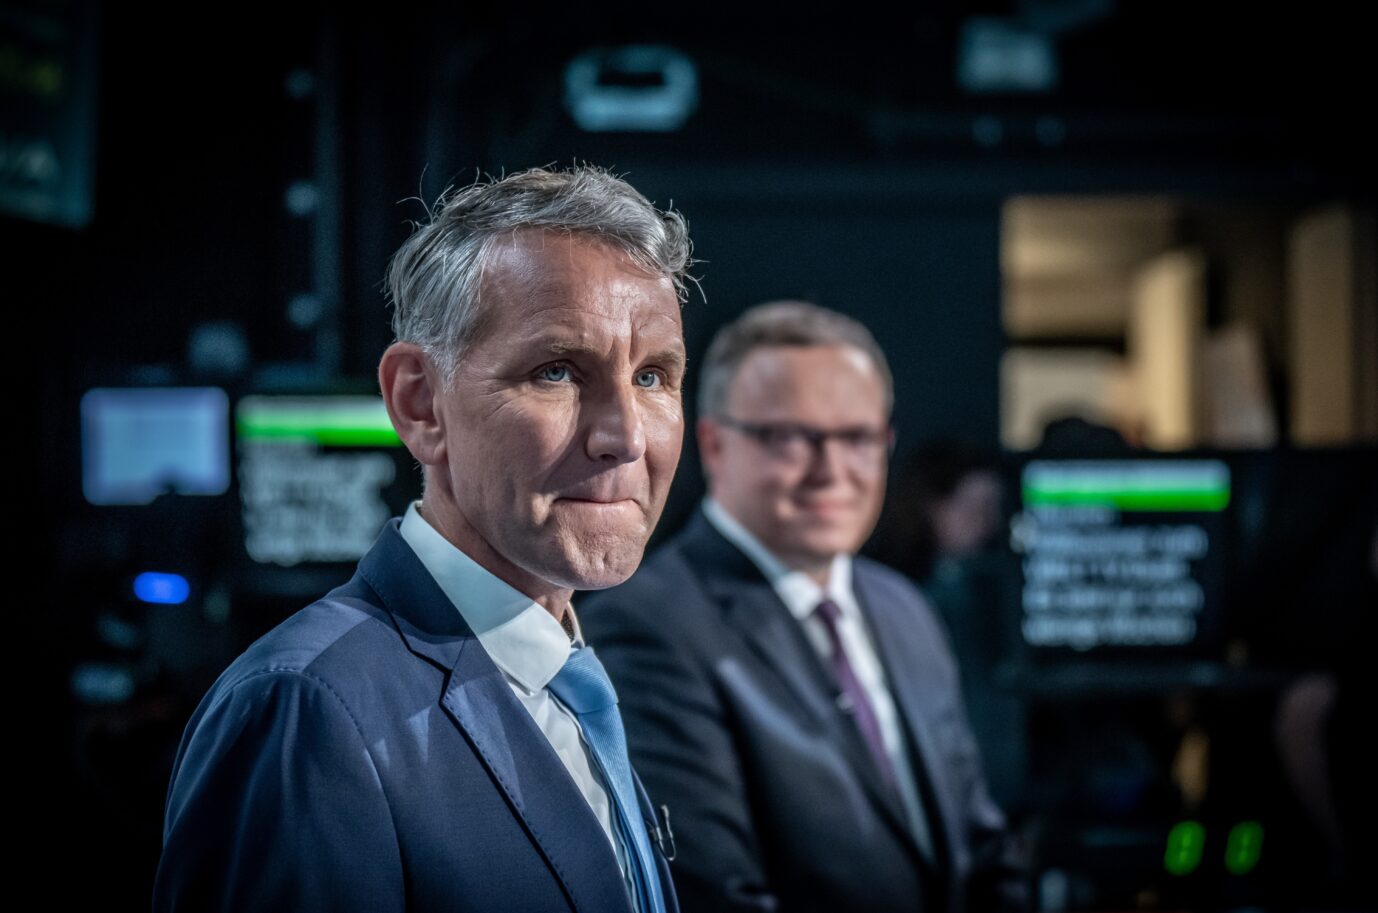 Björn Höcke von der AfD und Mario Voigt von der CDU sind auf dem Bild zu sehen.